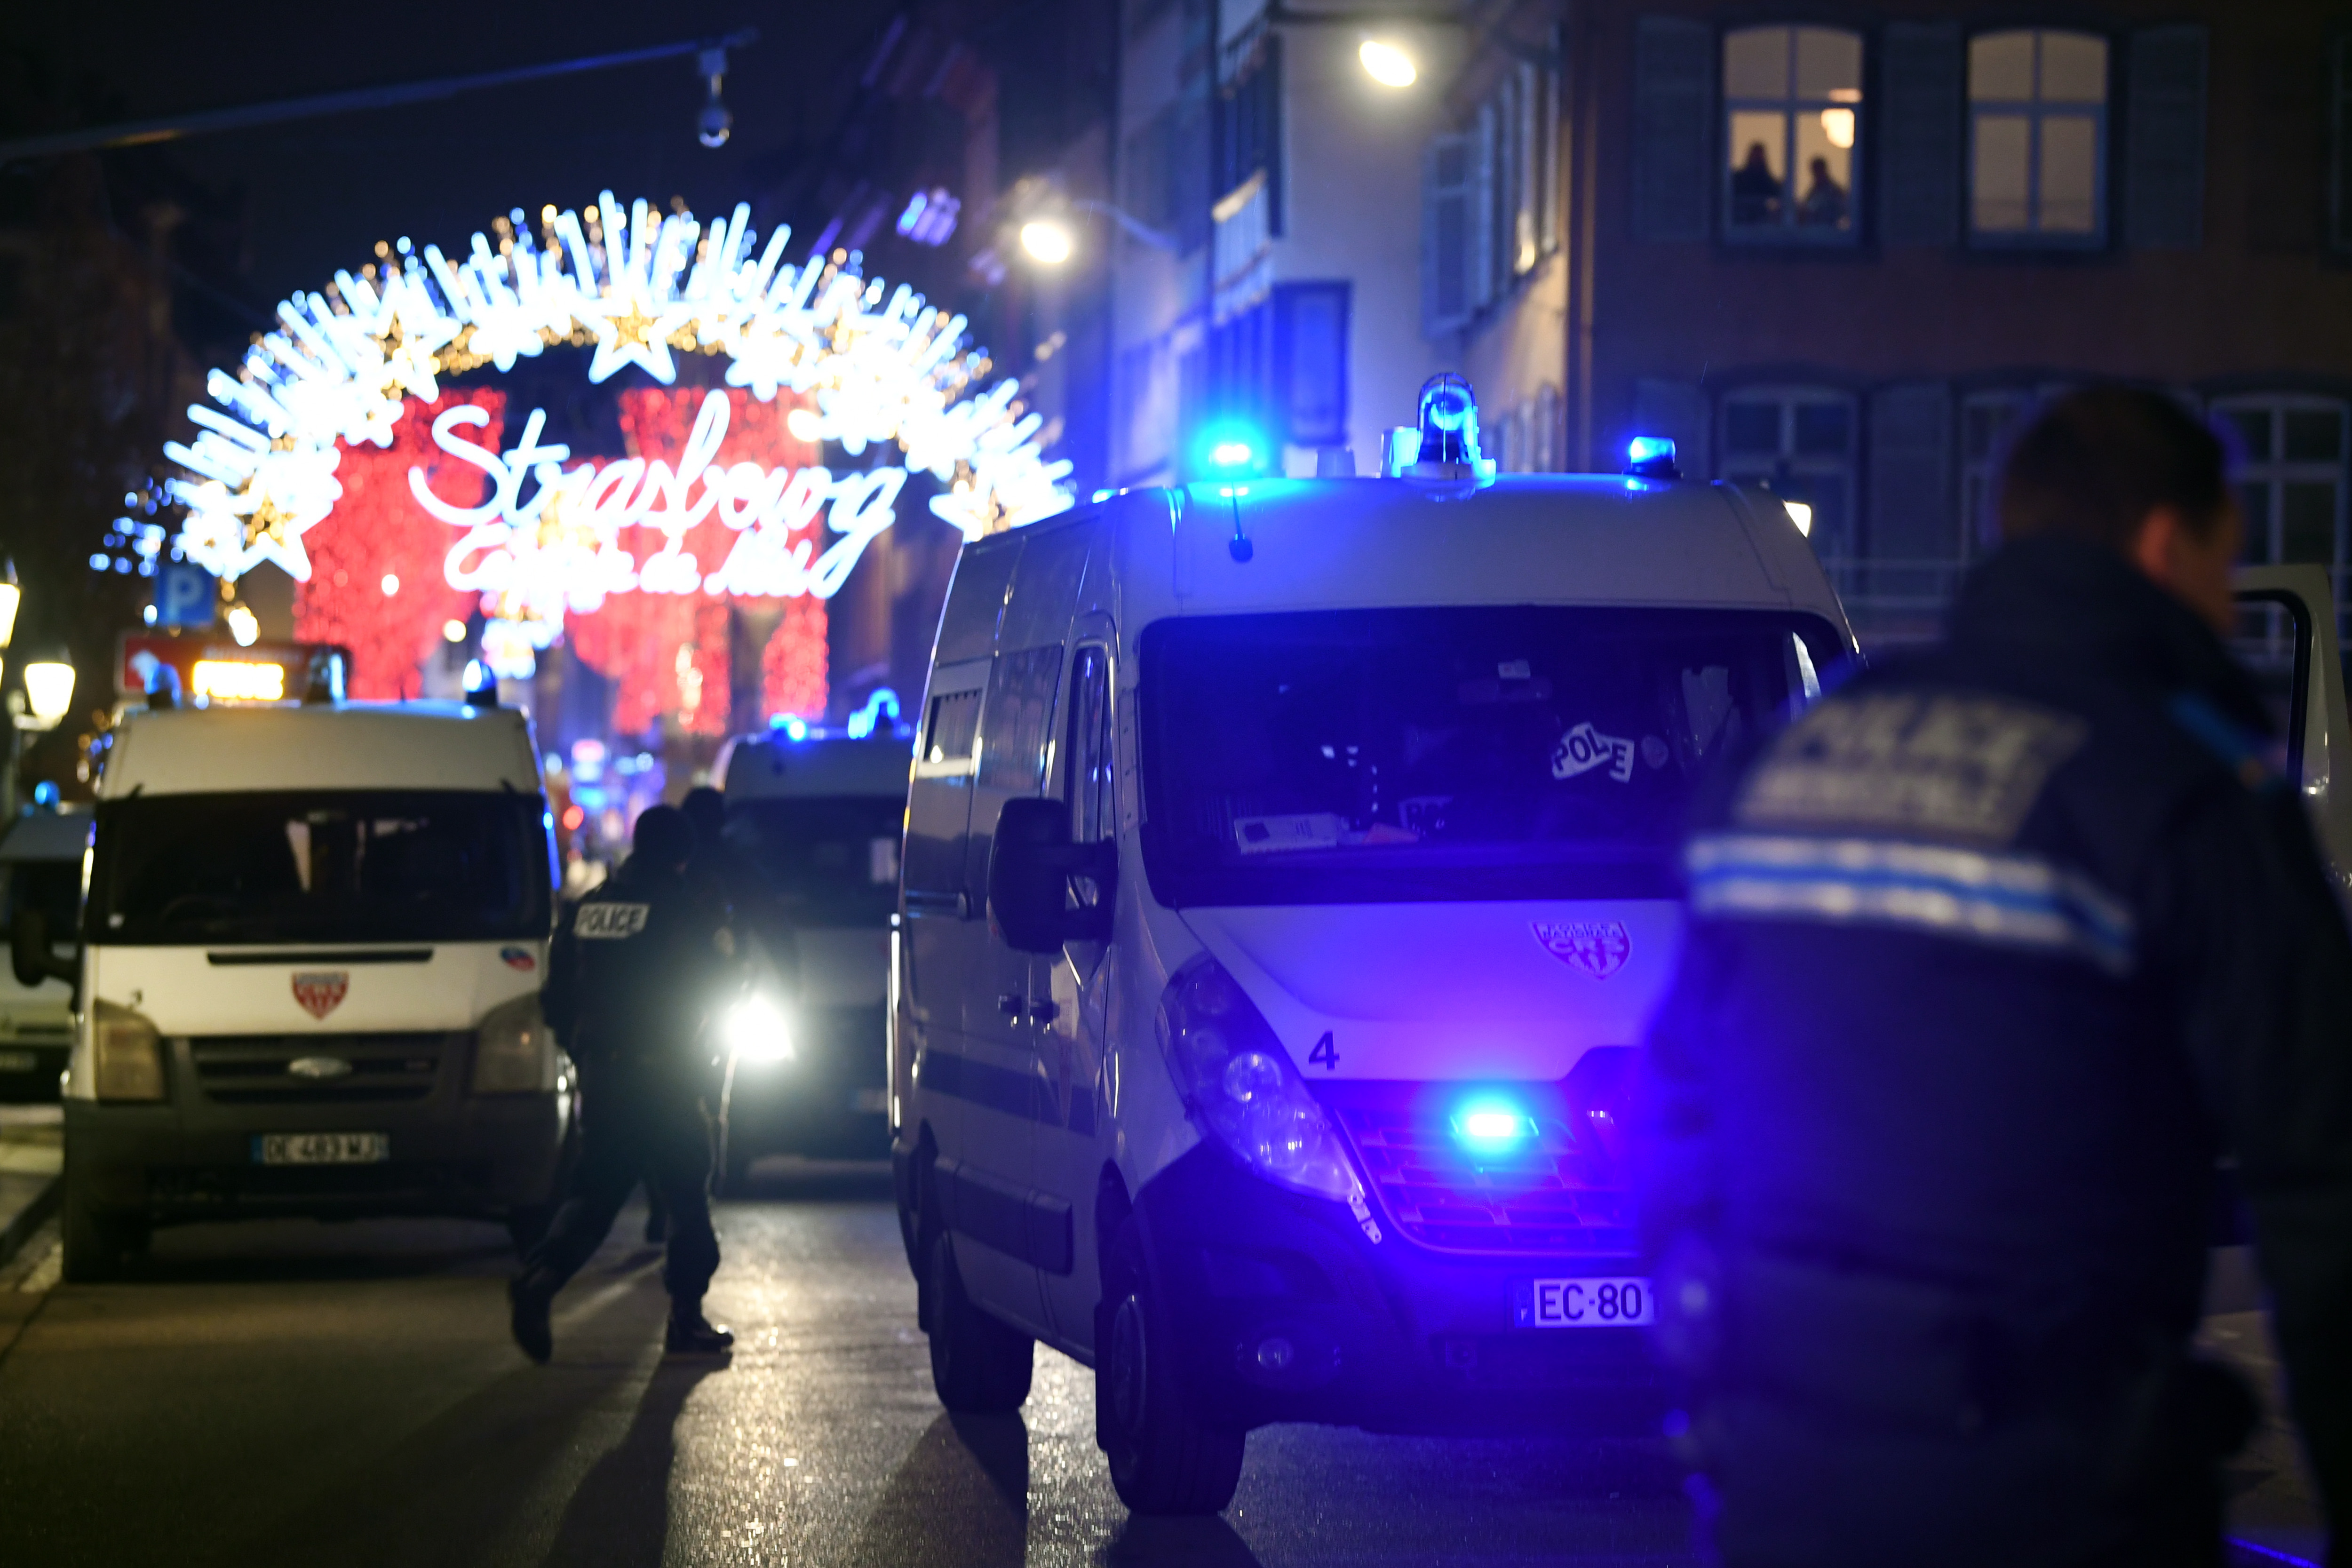 Френската полиция подозира, че стрелбата близо до коледния базар в Страсбург е терористичен акт, предаде ДПА. Полицията съобщи, че при инцидента са загинали четирима души и са били ранени 11. Нападателят е избягал от местопрестъплението и се издирва. Той е бил ранен след престрелка с полицията.